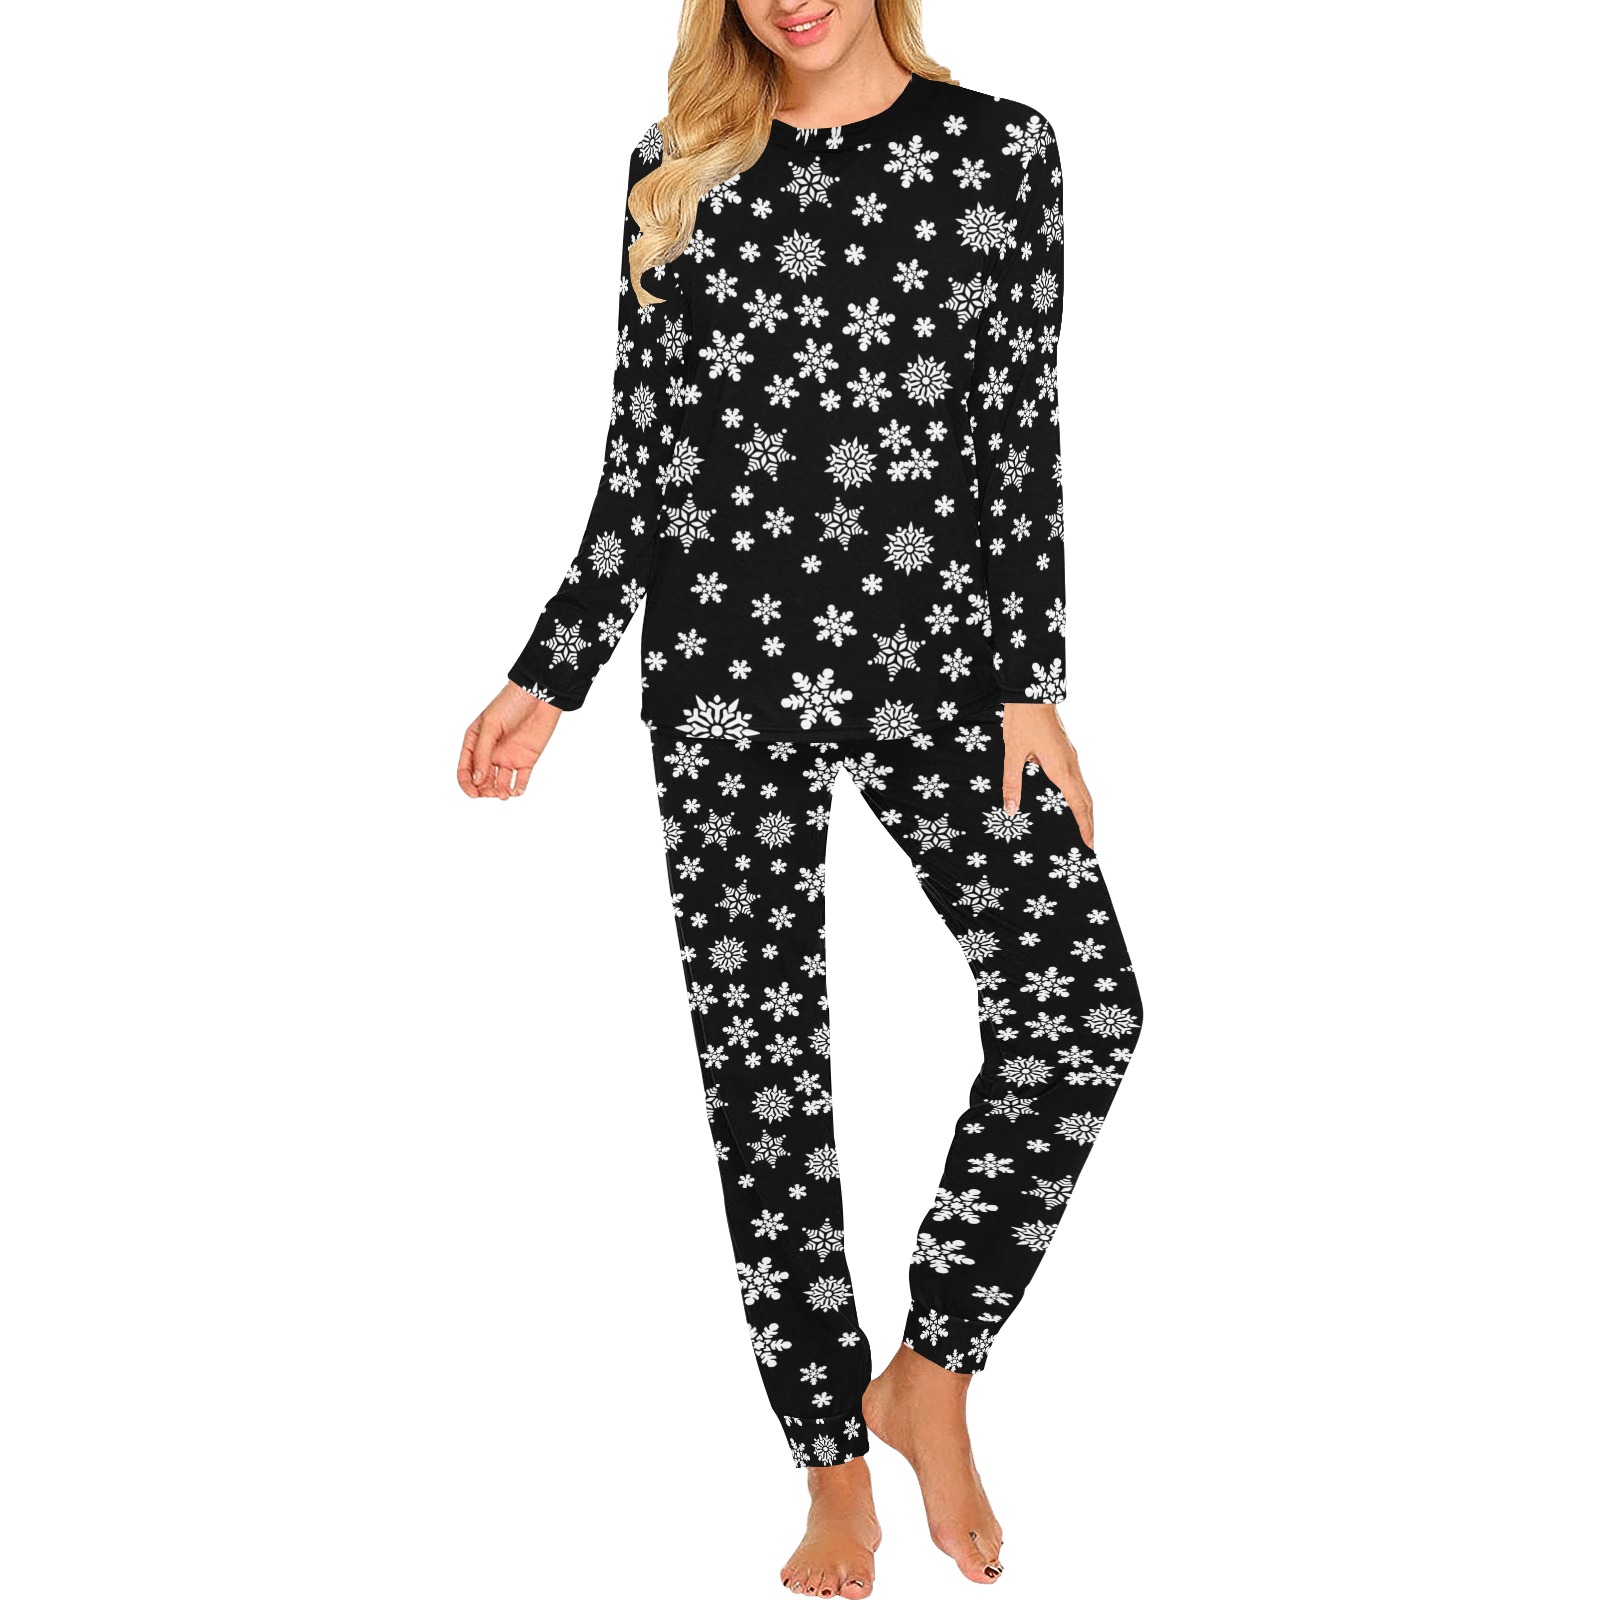 Christmas White Snowflakes on Black Women's All Over Print Pajama Set